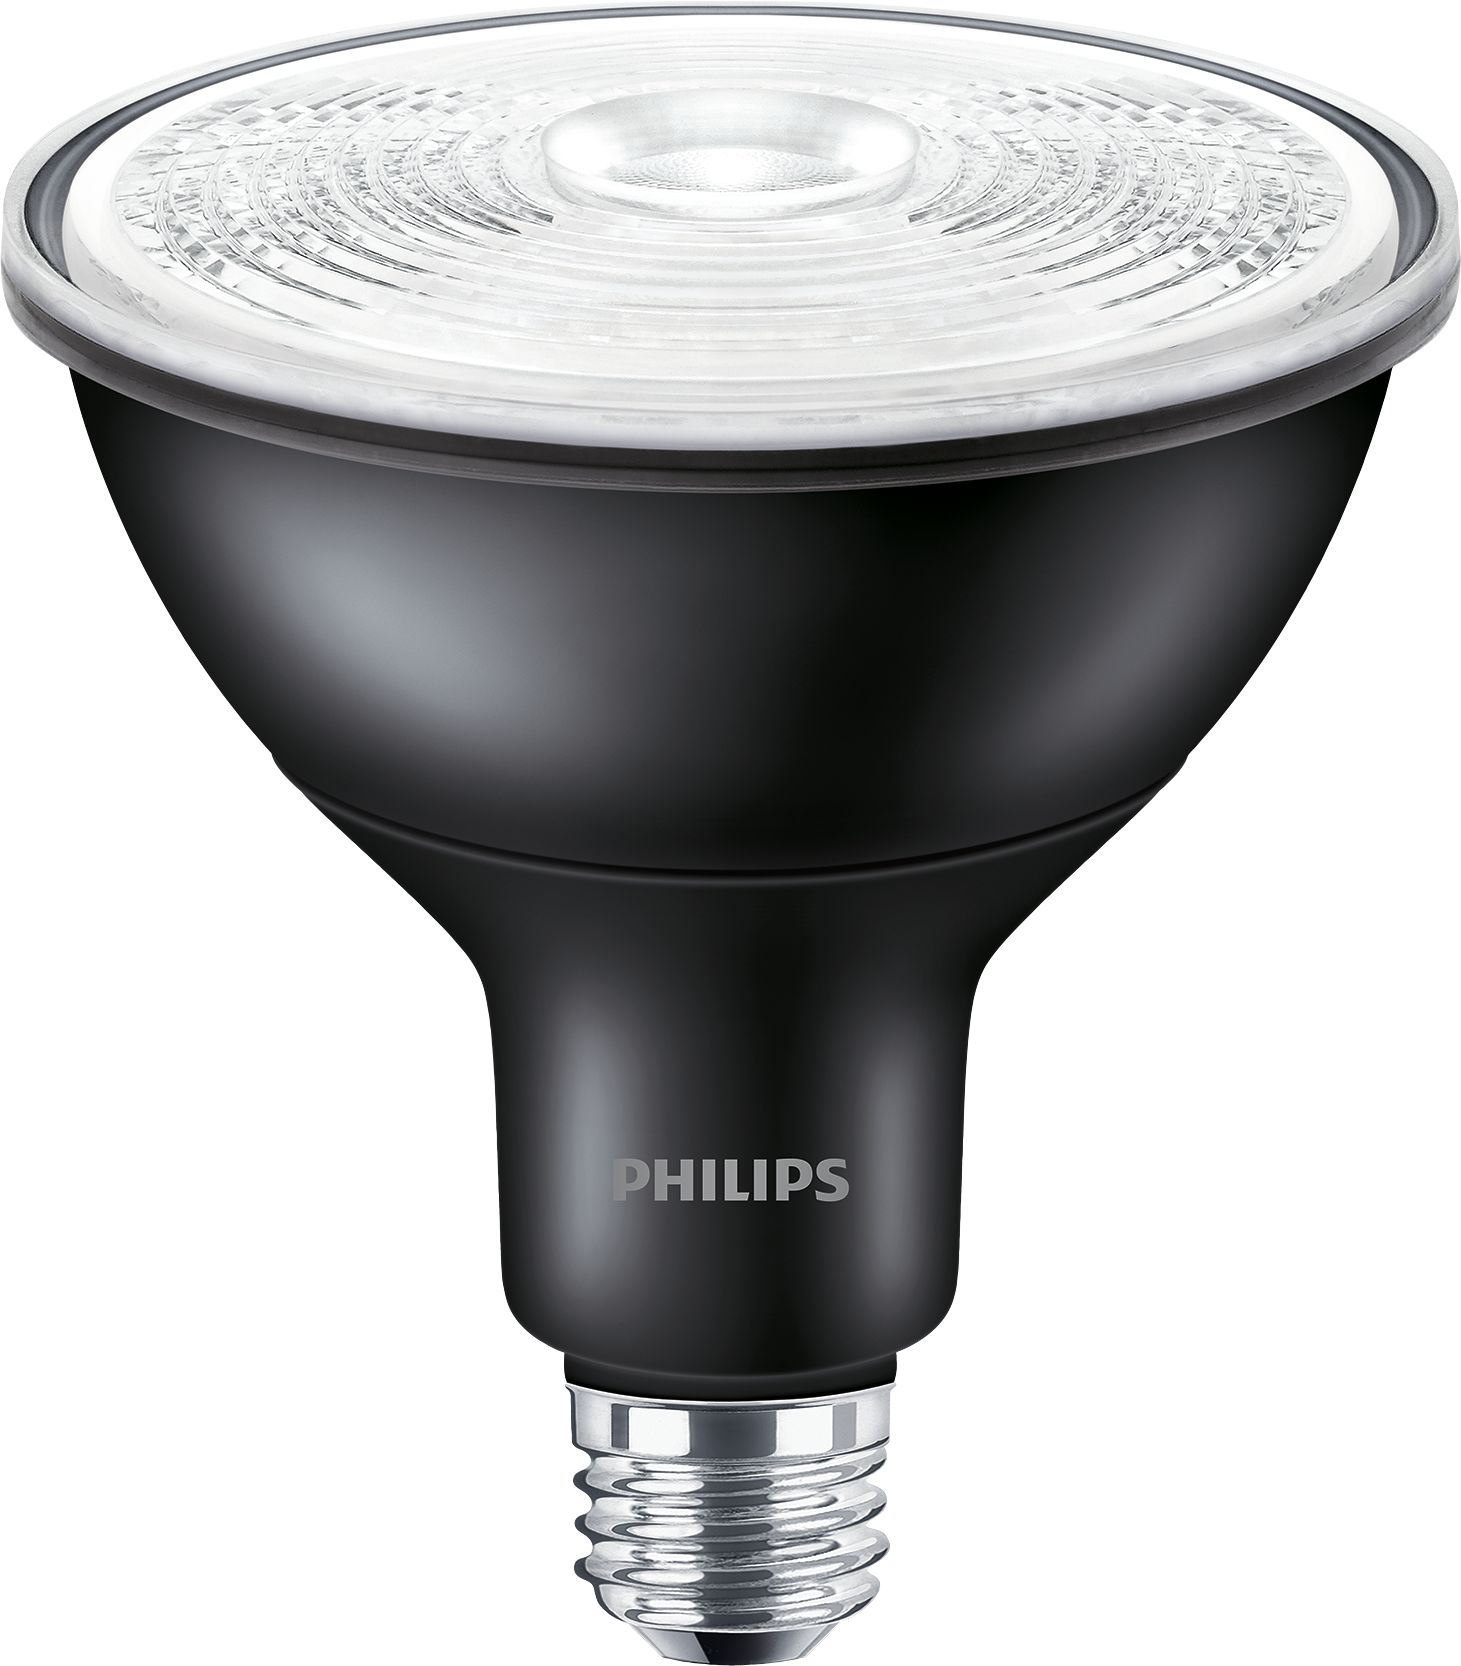 Philips Reflektor Strahler Spot PAR38 HalogenA 230V 100W 12° E27 NEU . 